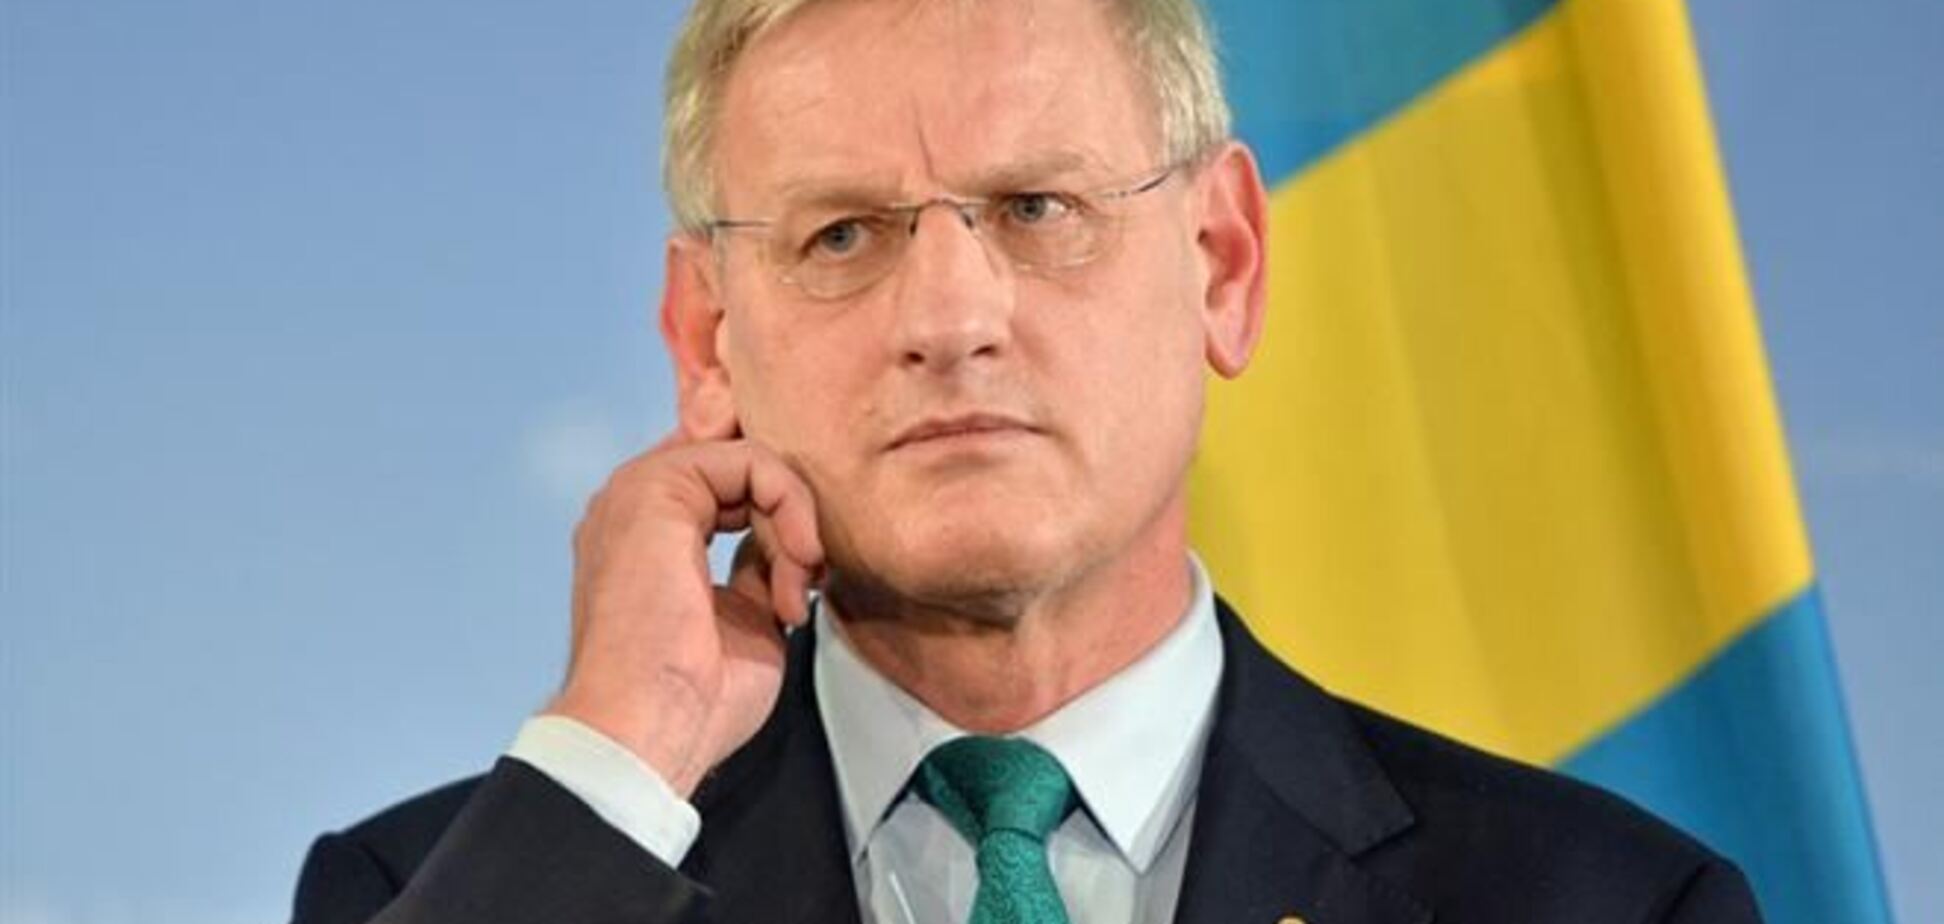 ЄС веде переговори з США щодо санкцій проти української влади - Більдт